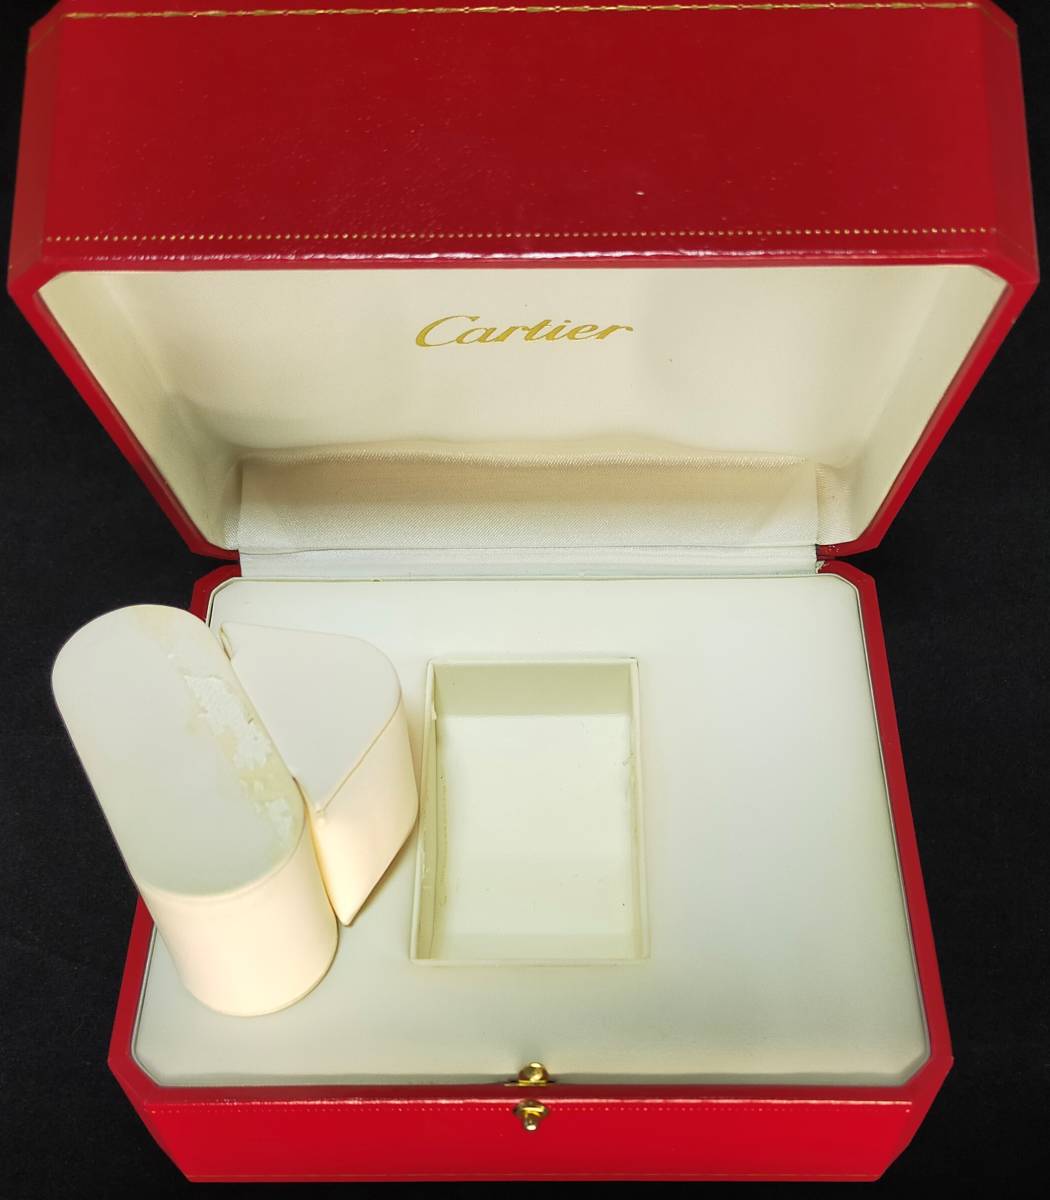 Cartier カルティエ マスト用 時計ケース Cリングタイプ 箱 3個セット 